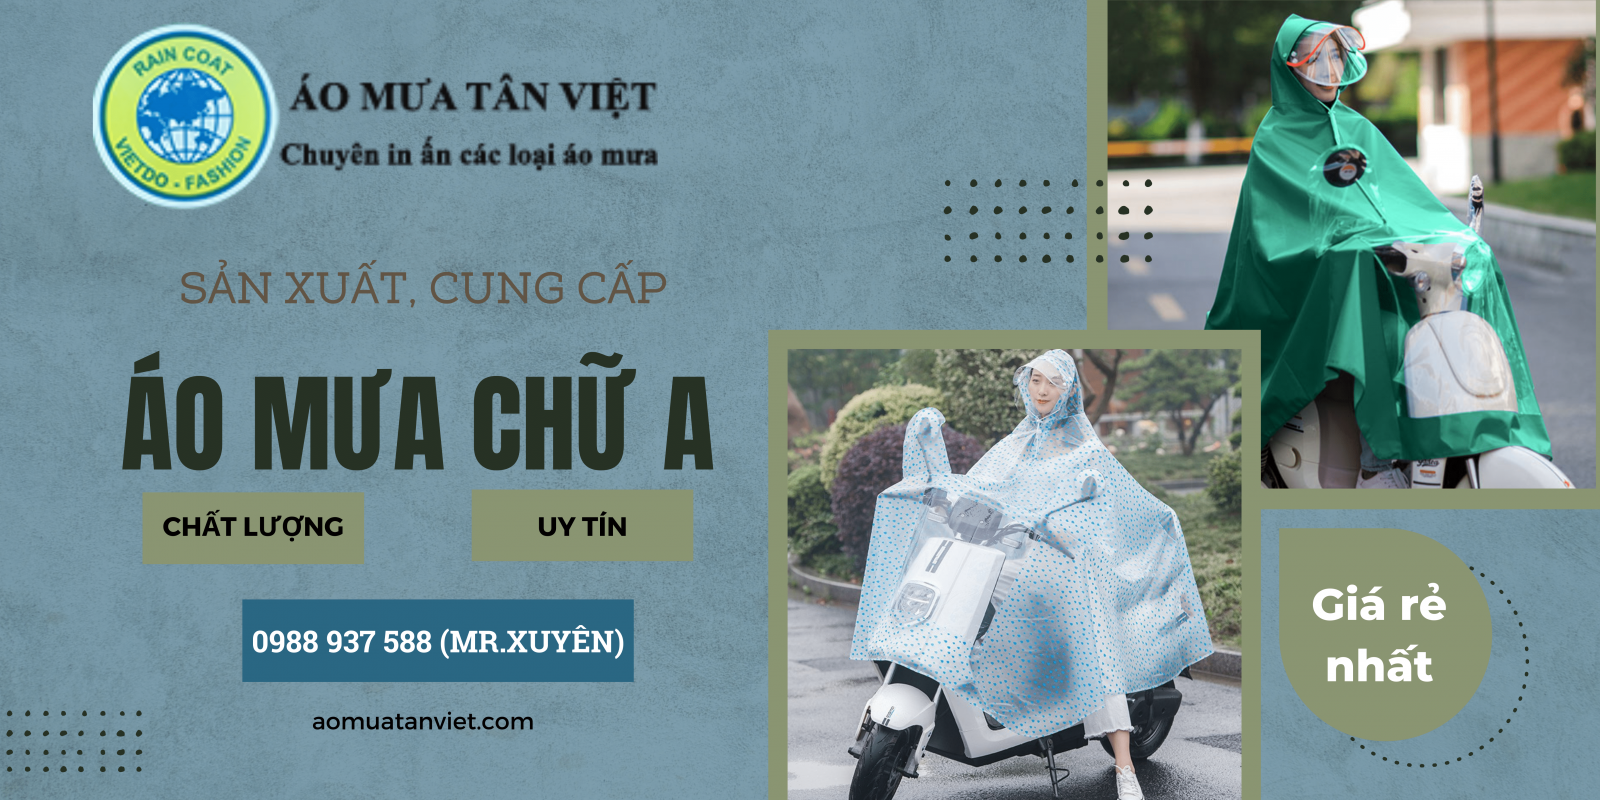 áo mưa Tân Việt chất lượng - uy tín - giá thảnh rẻ nhất